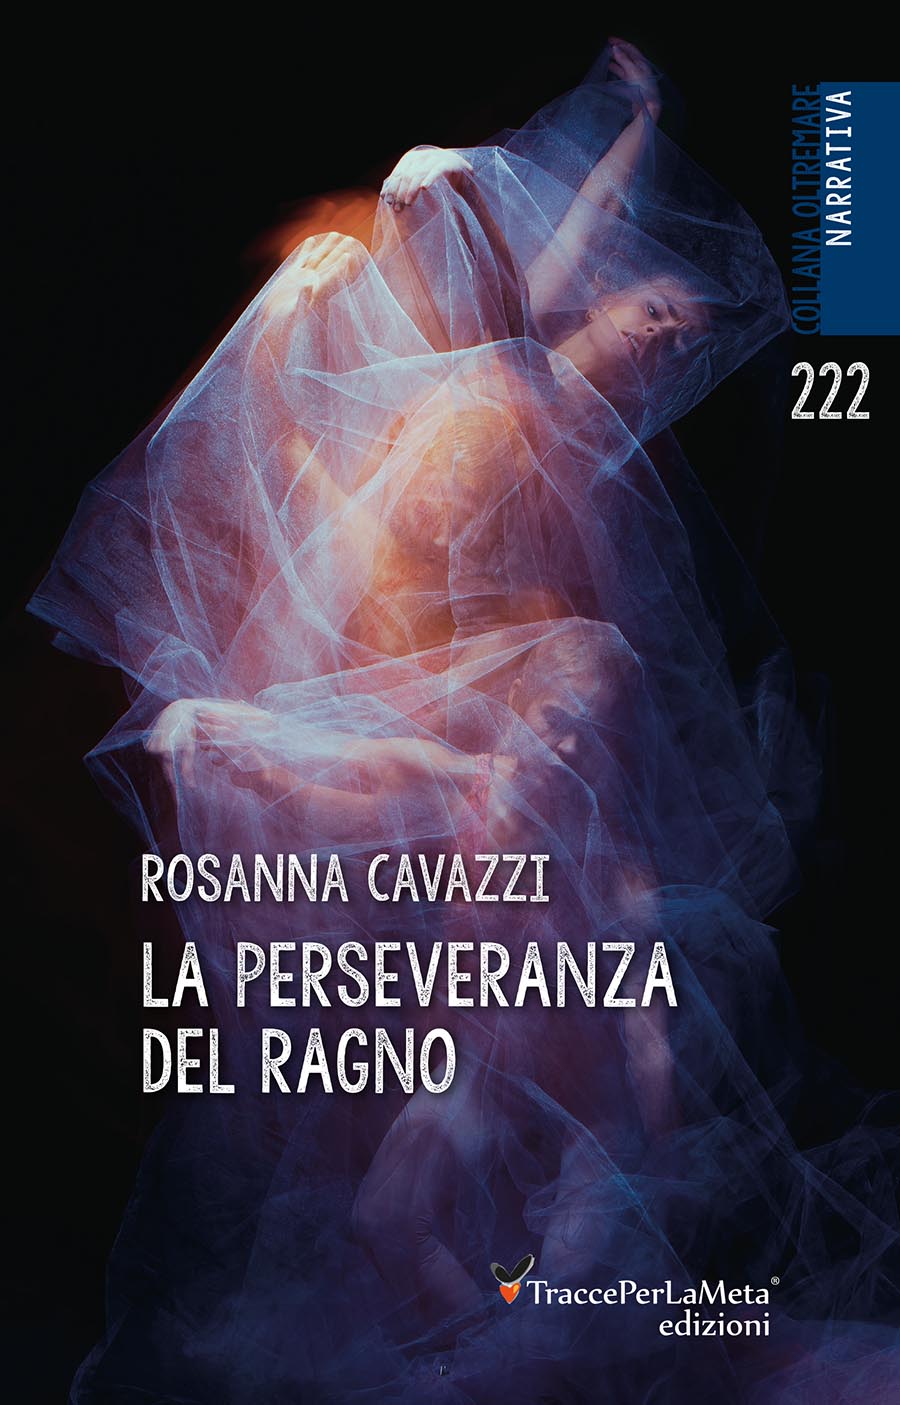 Un omicidio atroce e una vicenda intricata e avvincente con due finali; esce “La perseveranza del ragno” di Rosanna Cavazzi